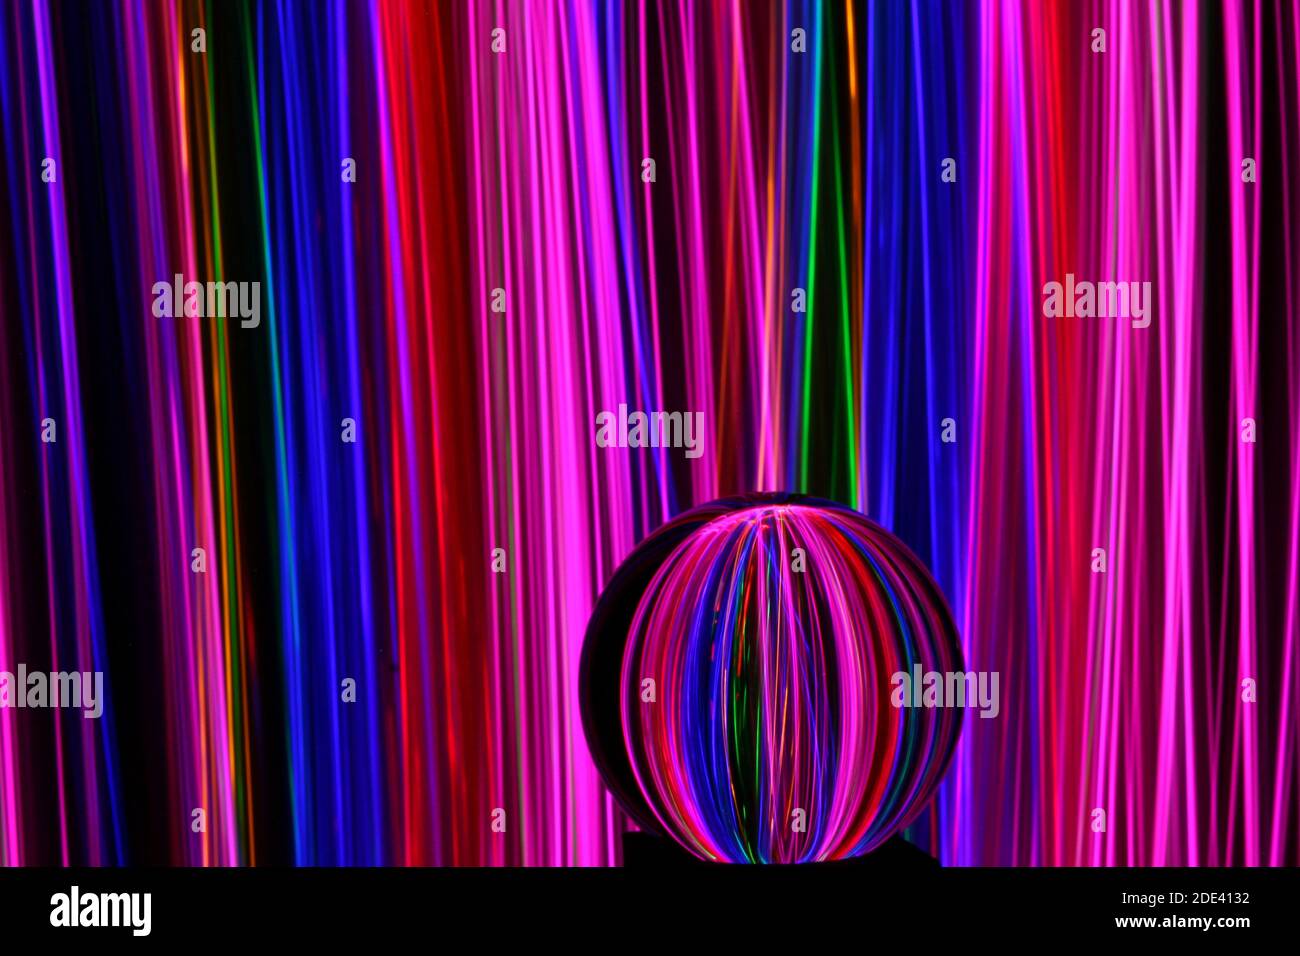 Photographie en exposition longue de néon multicolore dans un motif abstrait tourbillonnant avec boule de verre réfléchissante. Photographie de peinture légère. Banque D'Images